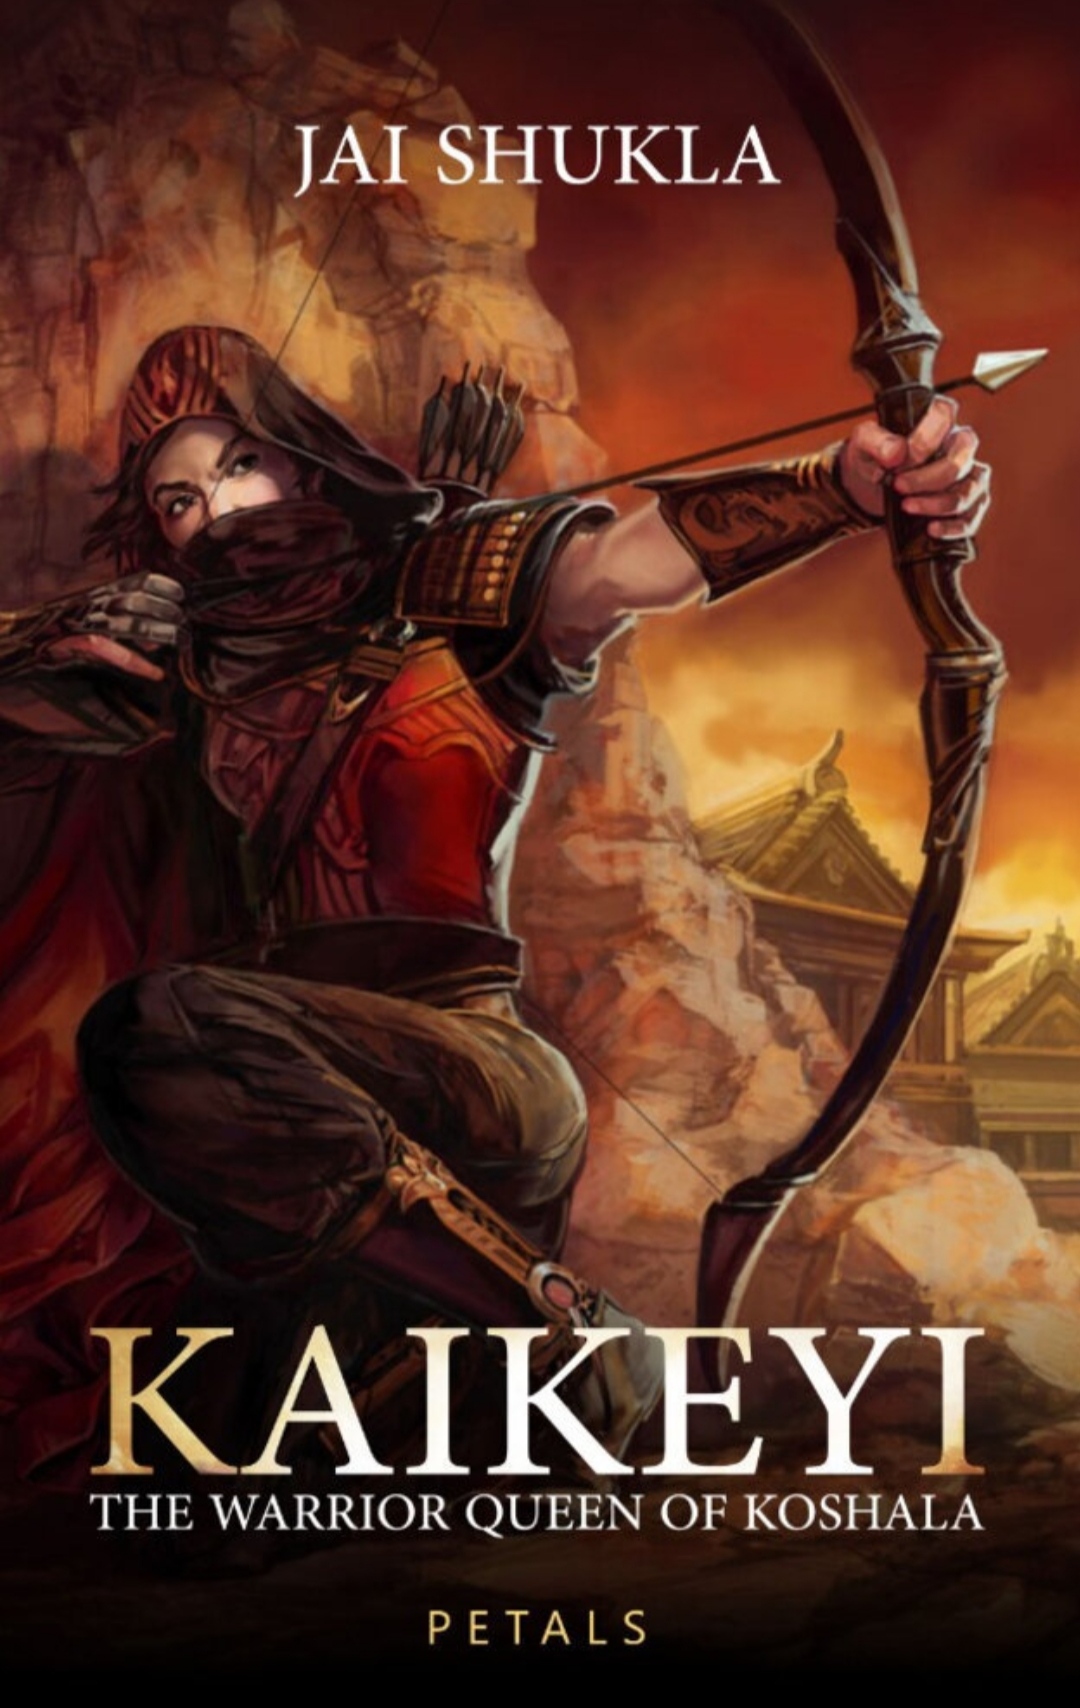 kaikeyi a novel by vaishnavi patel